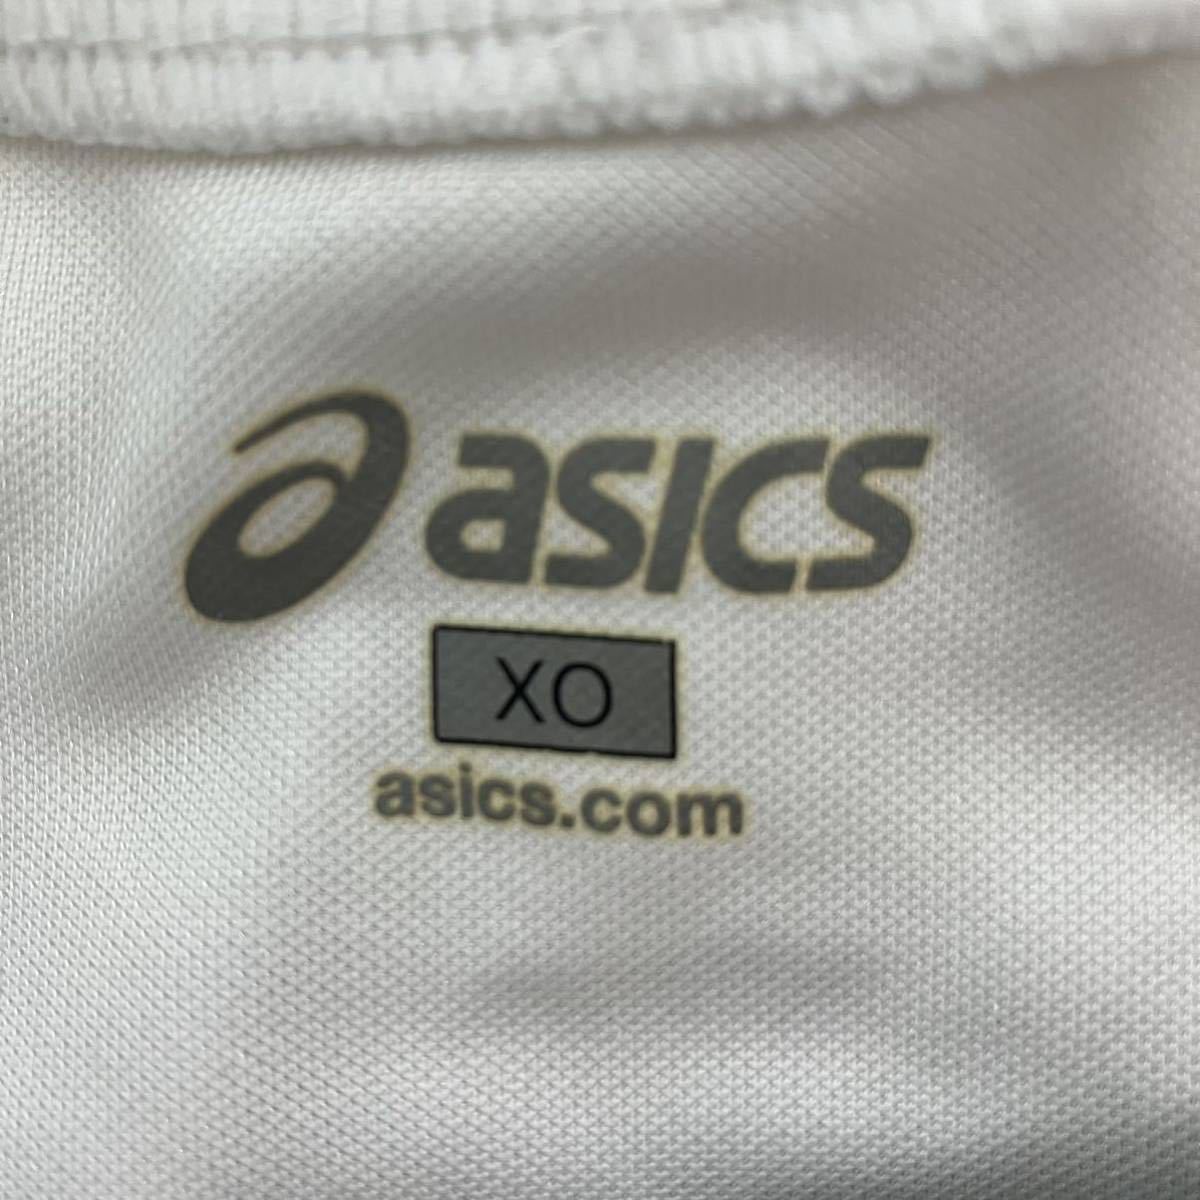 asics アシックス メンズ 半袖Tシャツ 半袖 大きいサイズ スポーツウェア トレーニングウェア ポリエステル製 XOサイズ 3Lサイズ相当